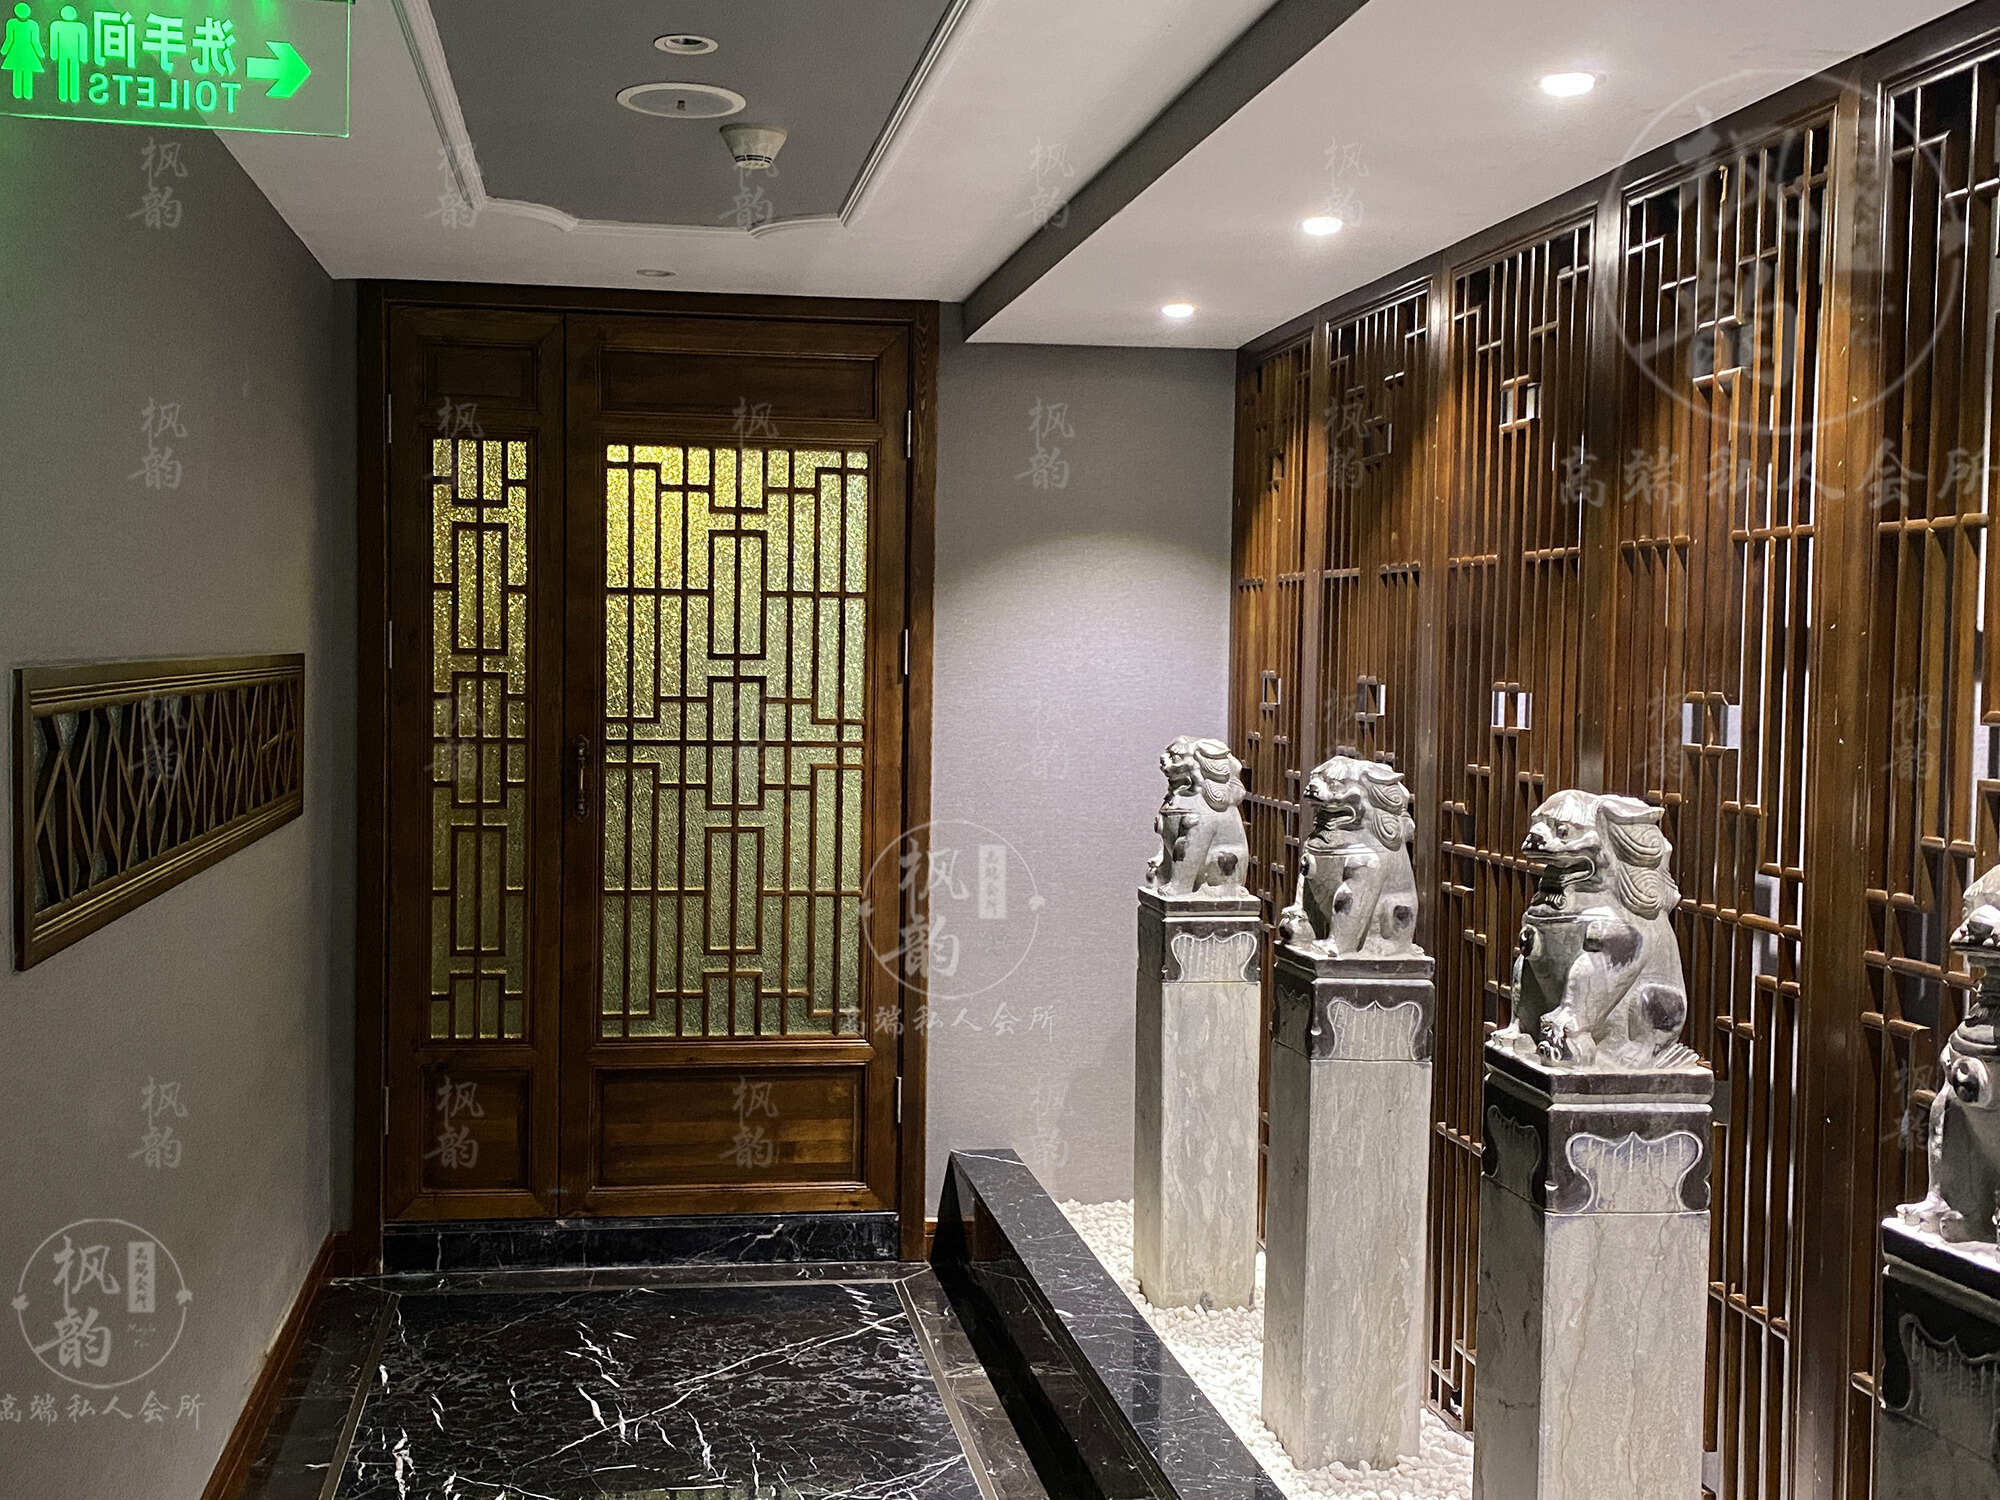 吴中区附近特色spa私人会所,店内装修的很